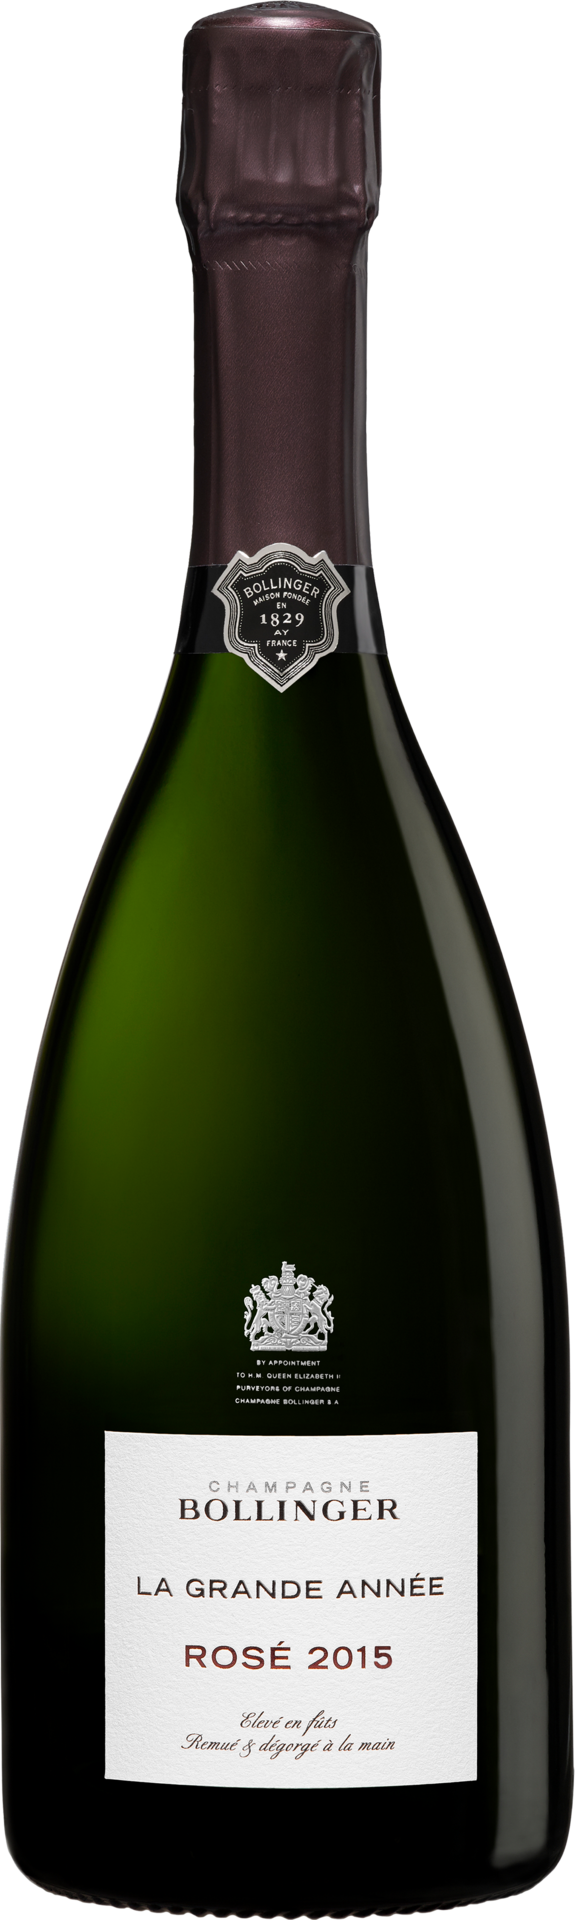 Champagne Bollinger La Grande Année Rosé - 2015